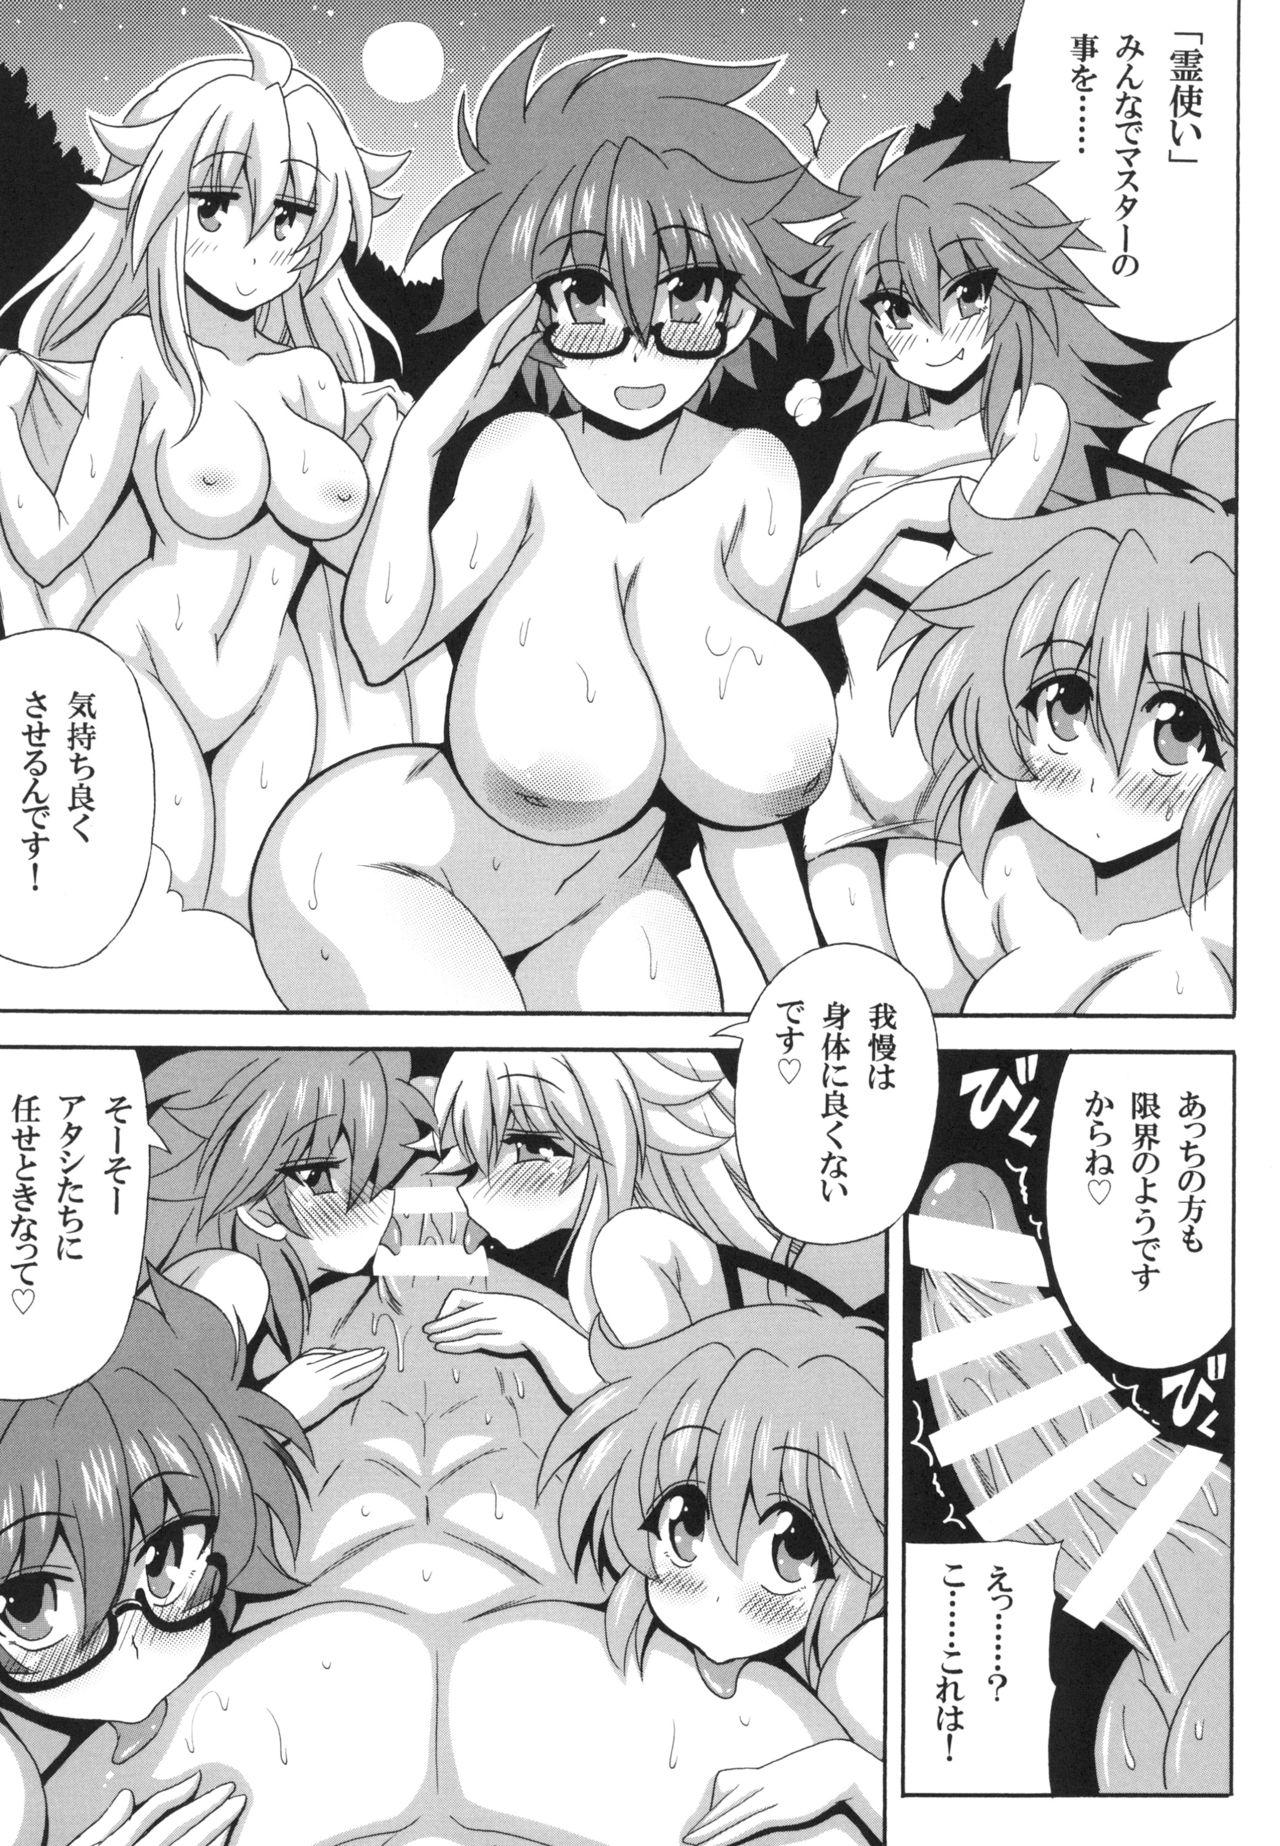 Small Tits Porn Reitsukai Onsen e Youkoso - Yu-gi-oh Rough Sex - Page 5